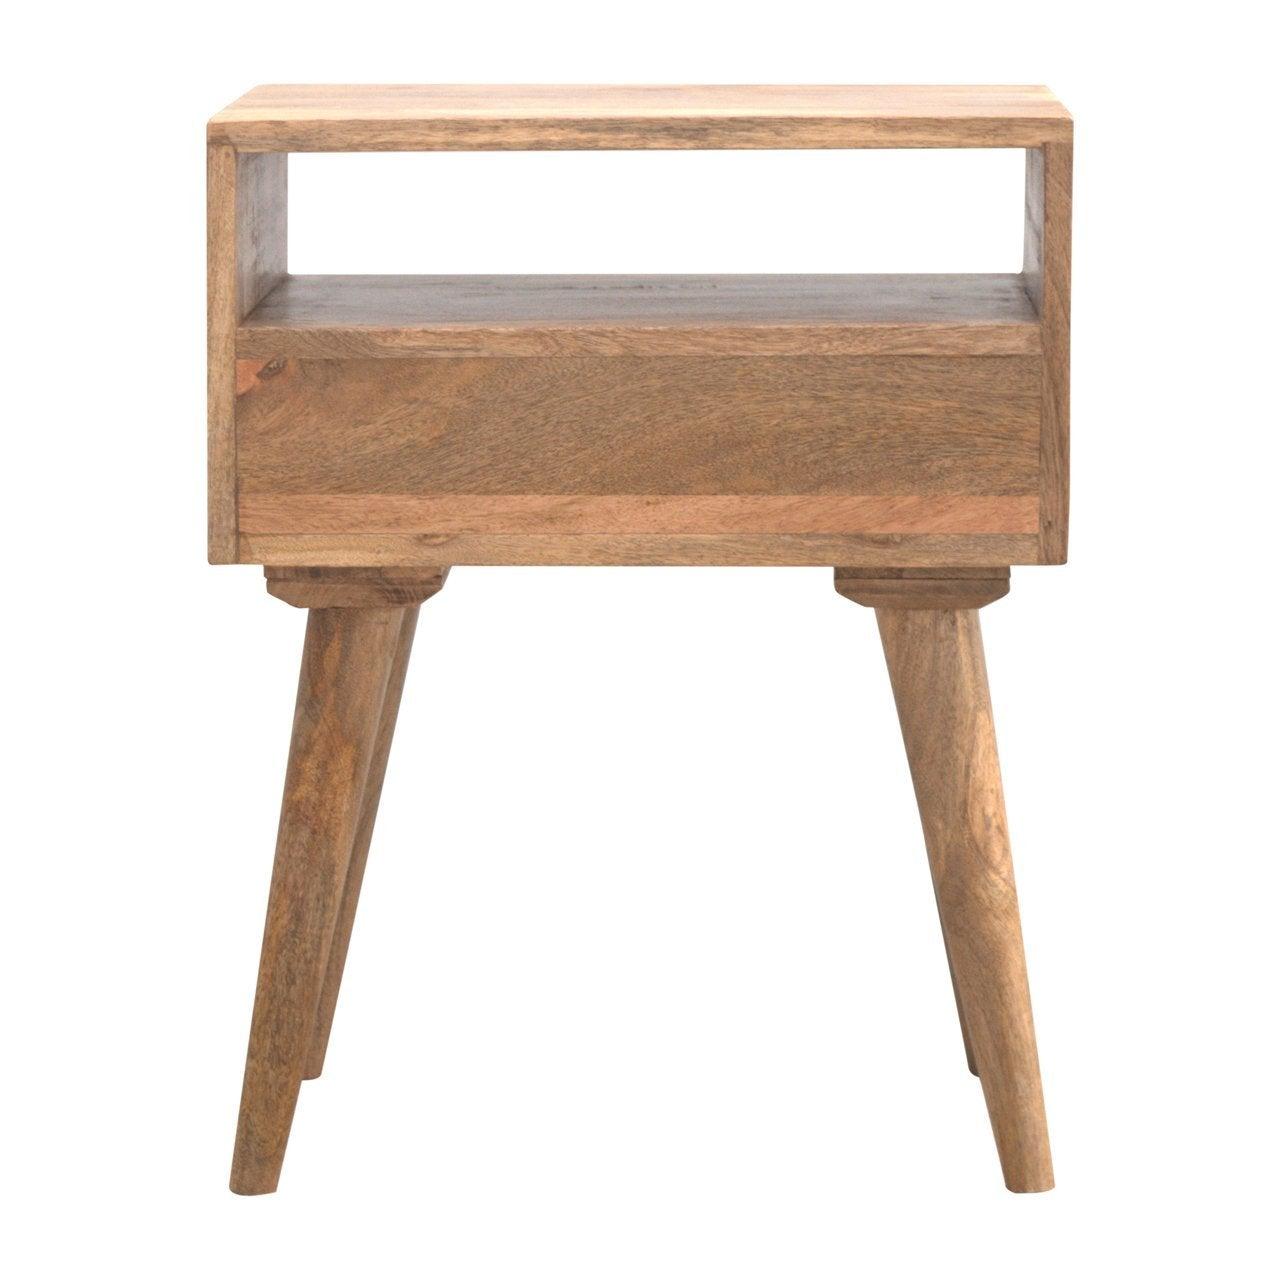 Modern solid wood bedside table with open slot - crimblefest furniture - image 9